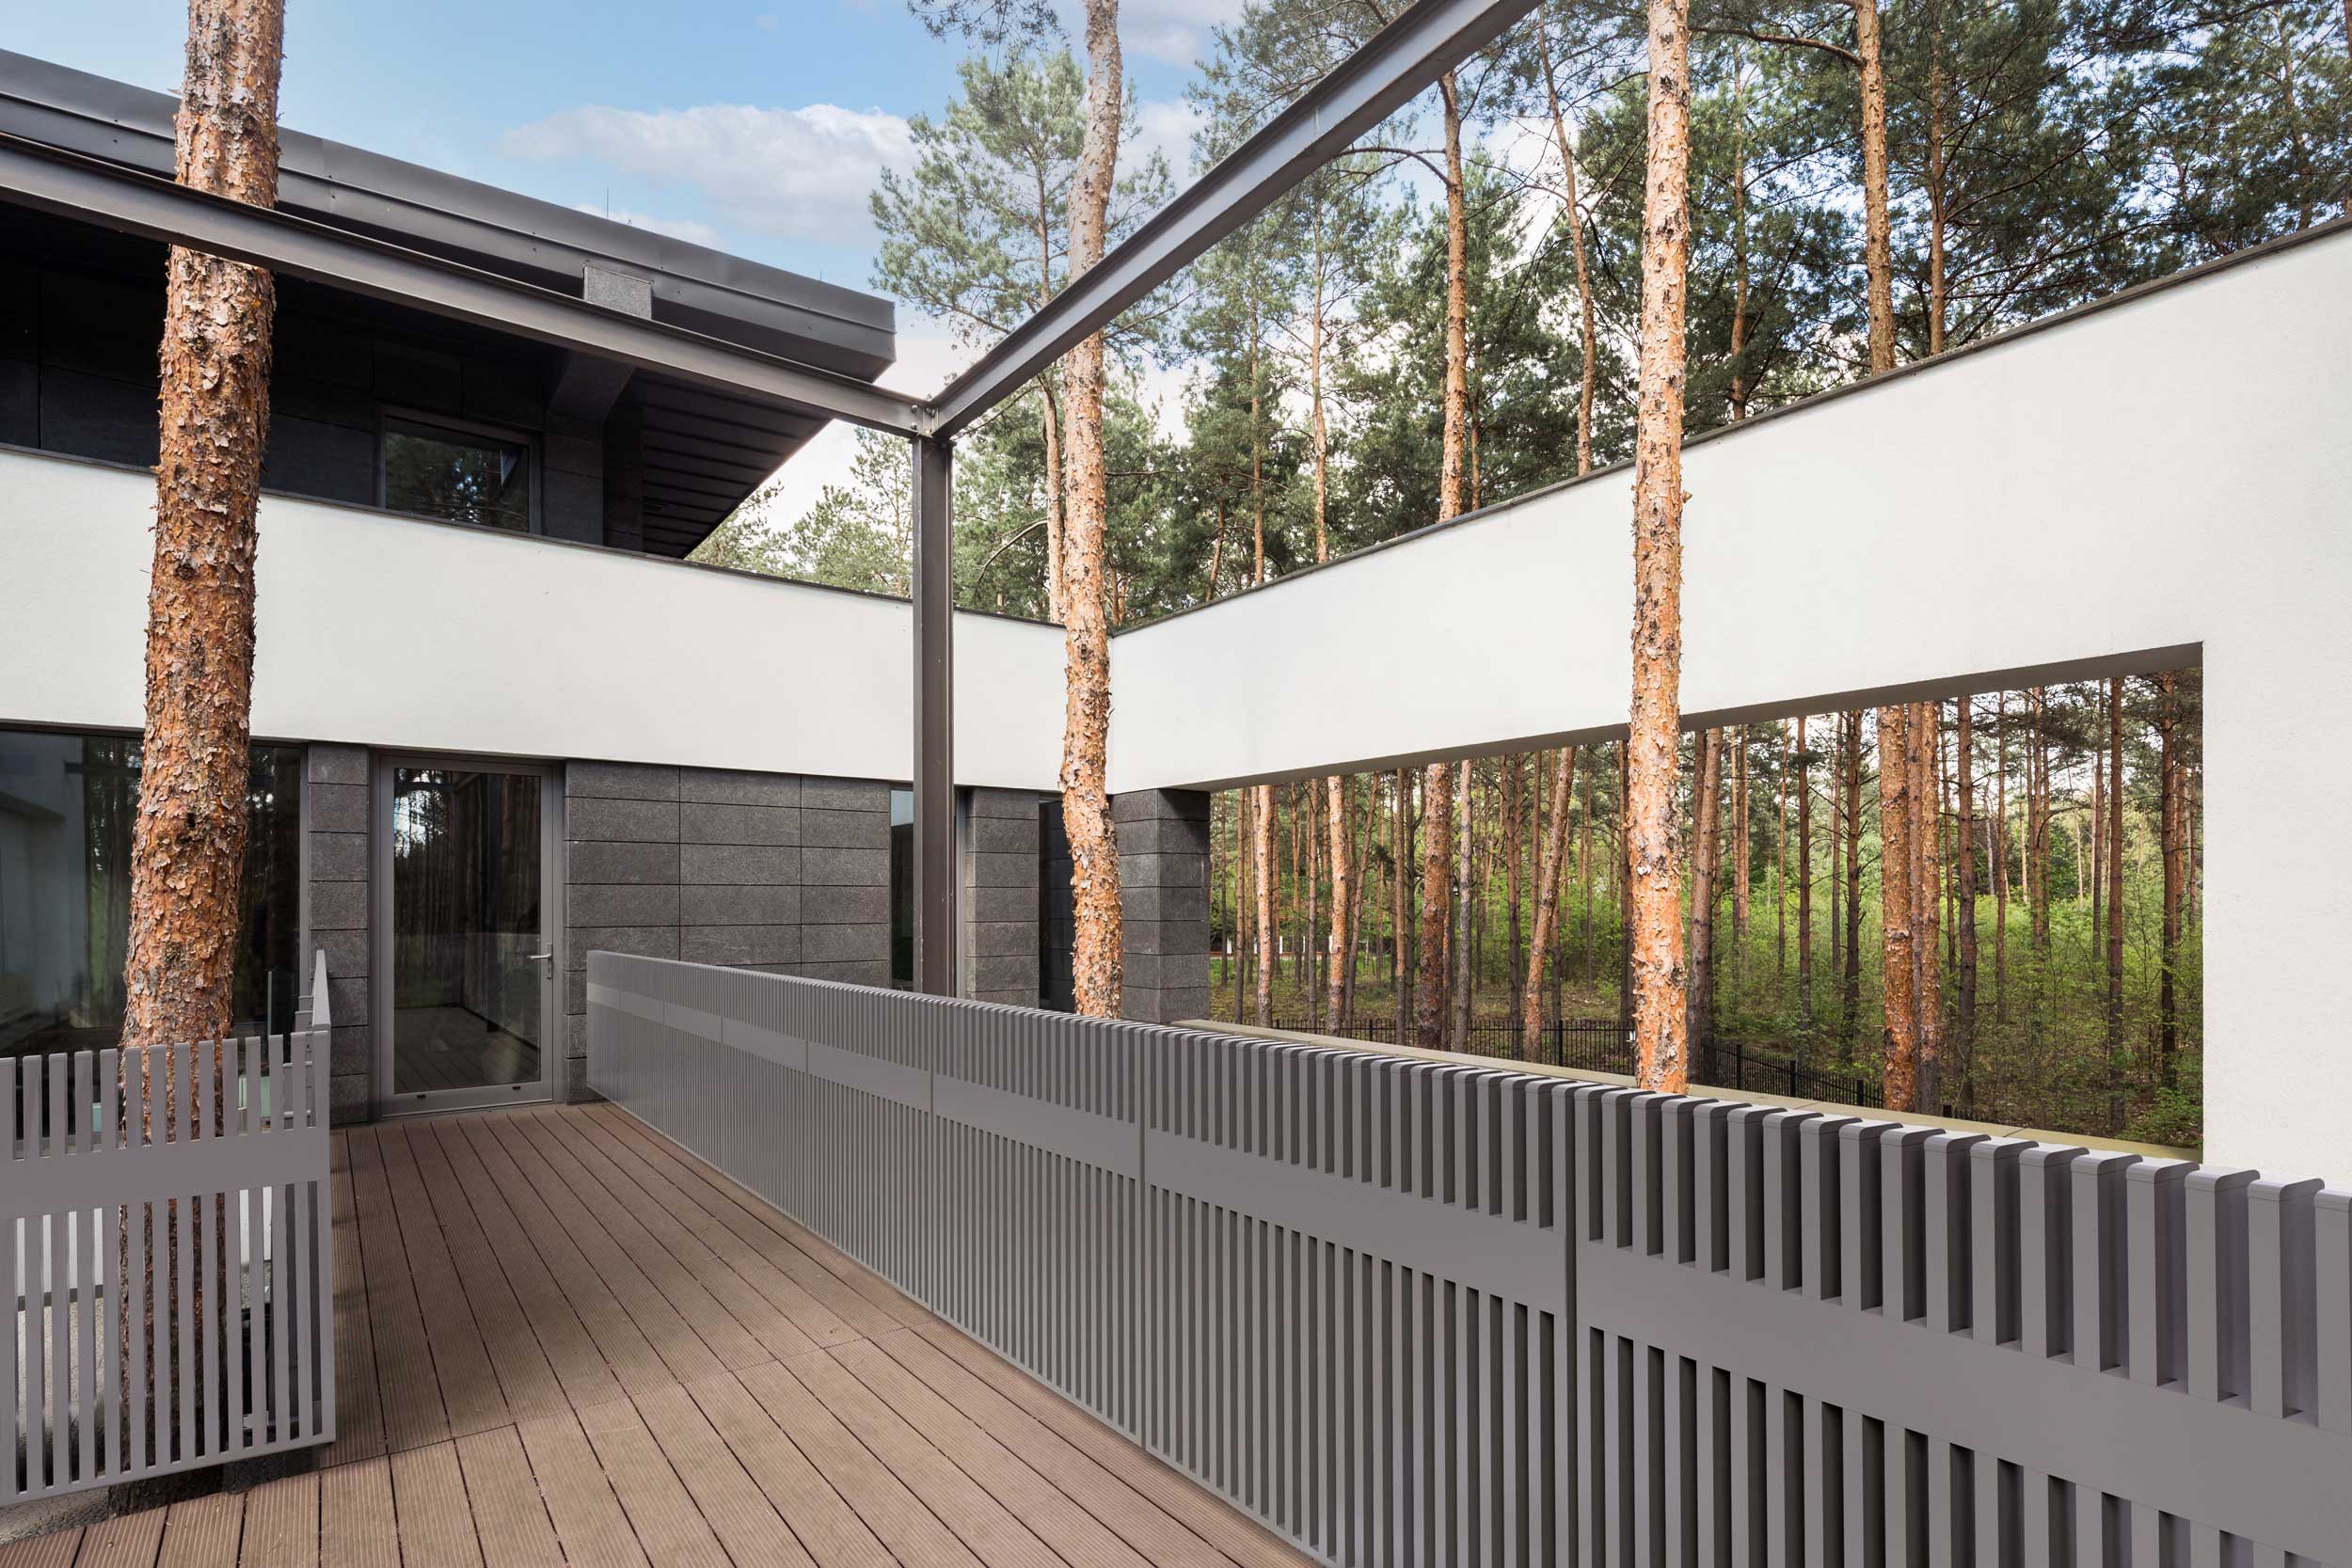 Moderner Gartenzaun aus Aluminium mit senkrechten Stäben in grau markiert einen Hauseingang, Modell Epos - Design by Studio F.A. Porsche in grau 